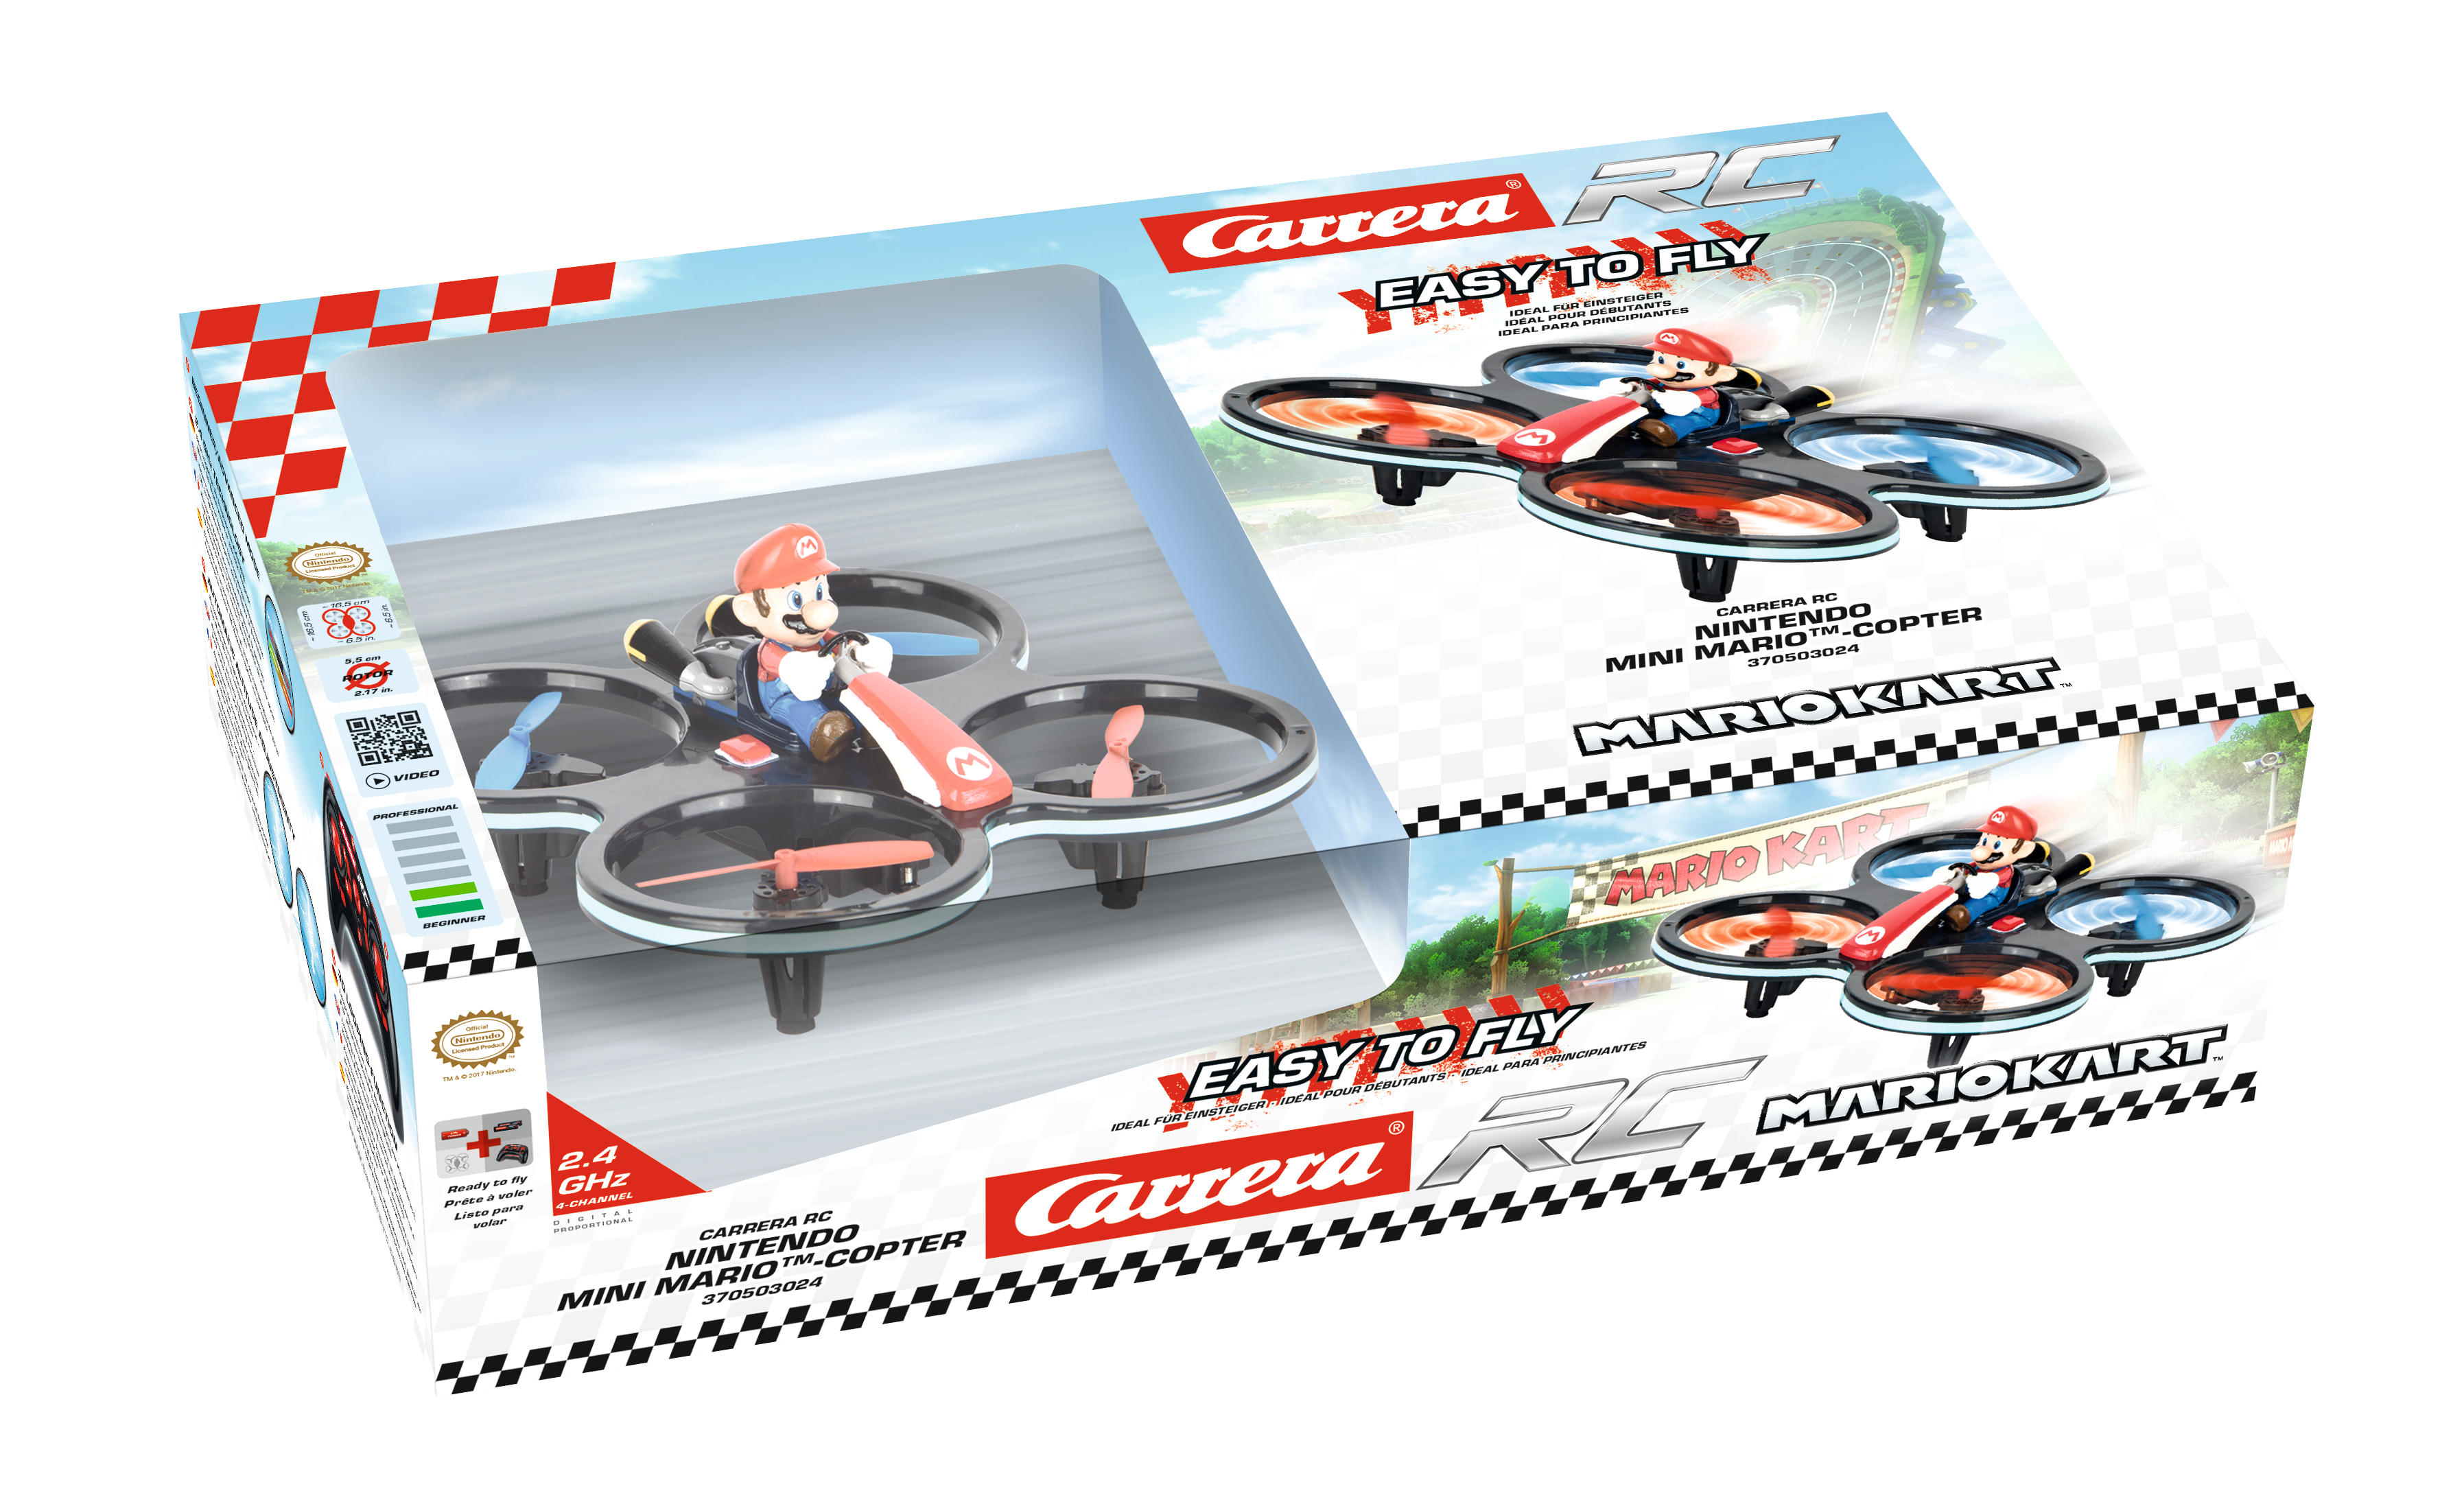 CARRERA Mehrfarbig Quadrocopter, Mini RC Mario-Copter